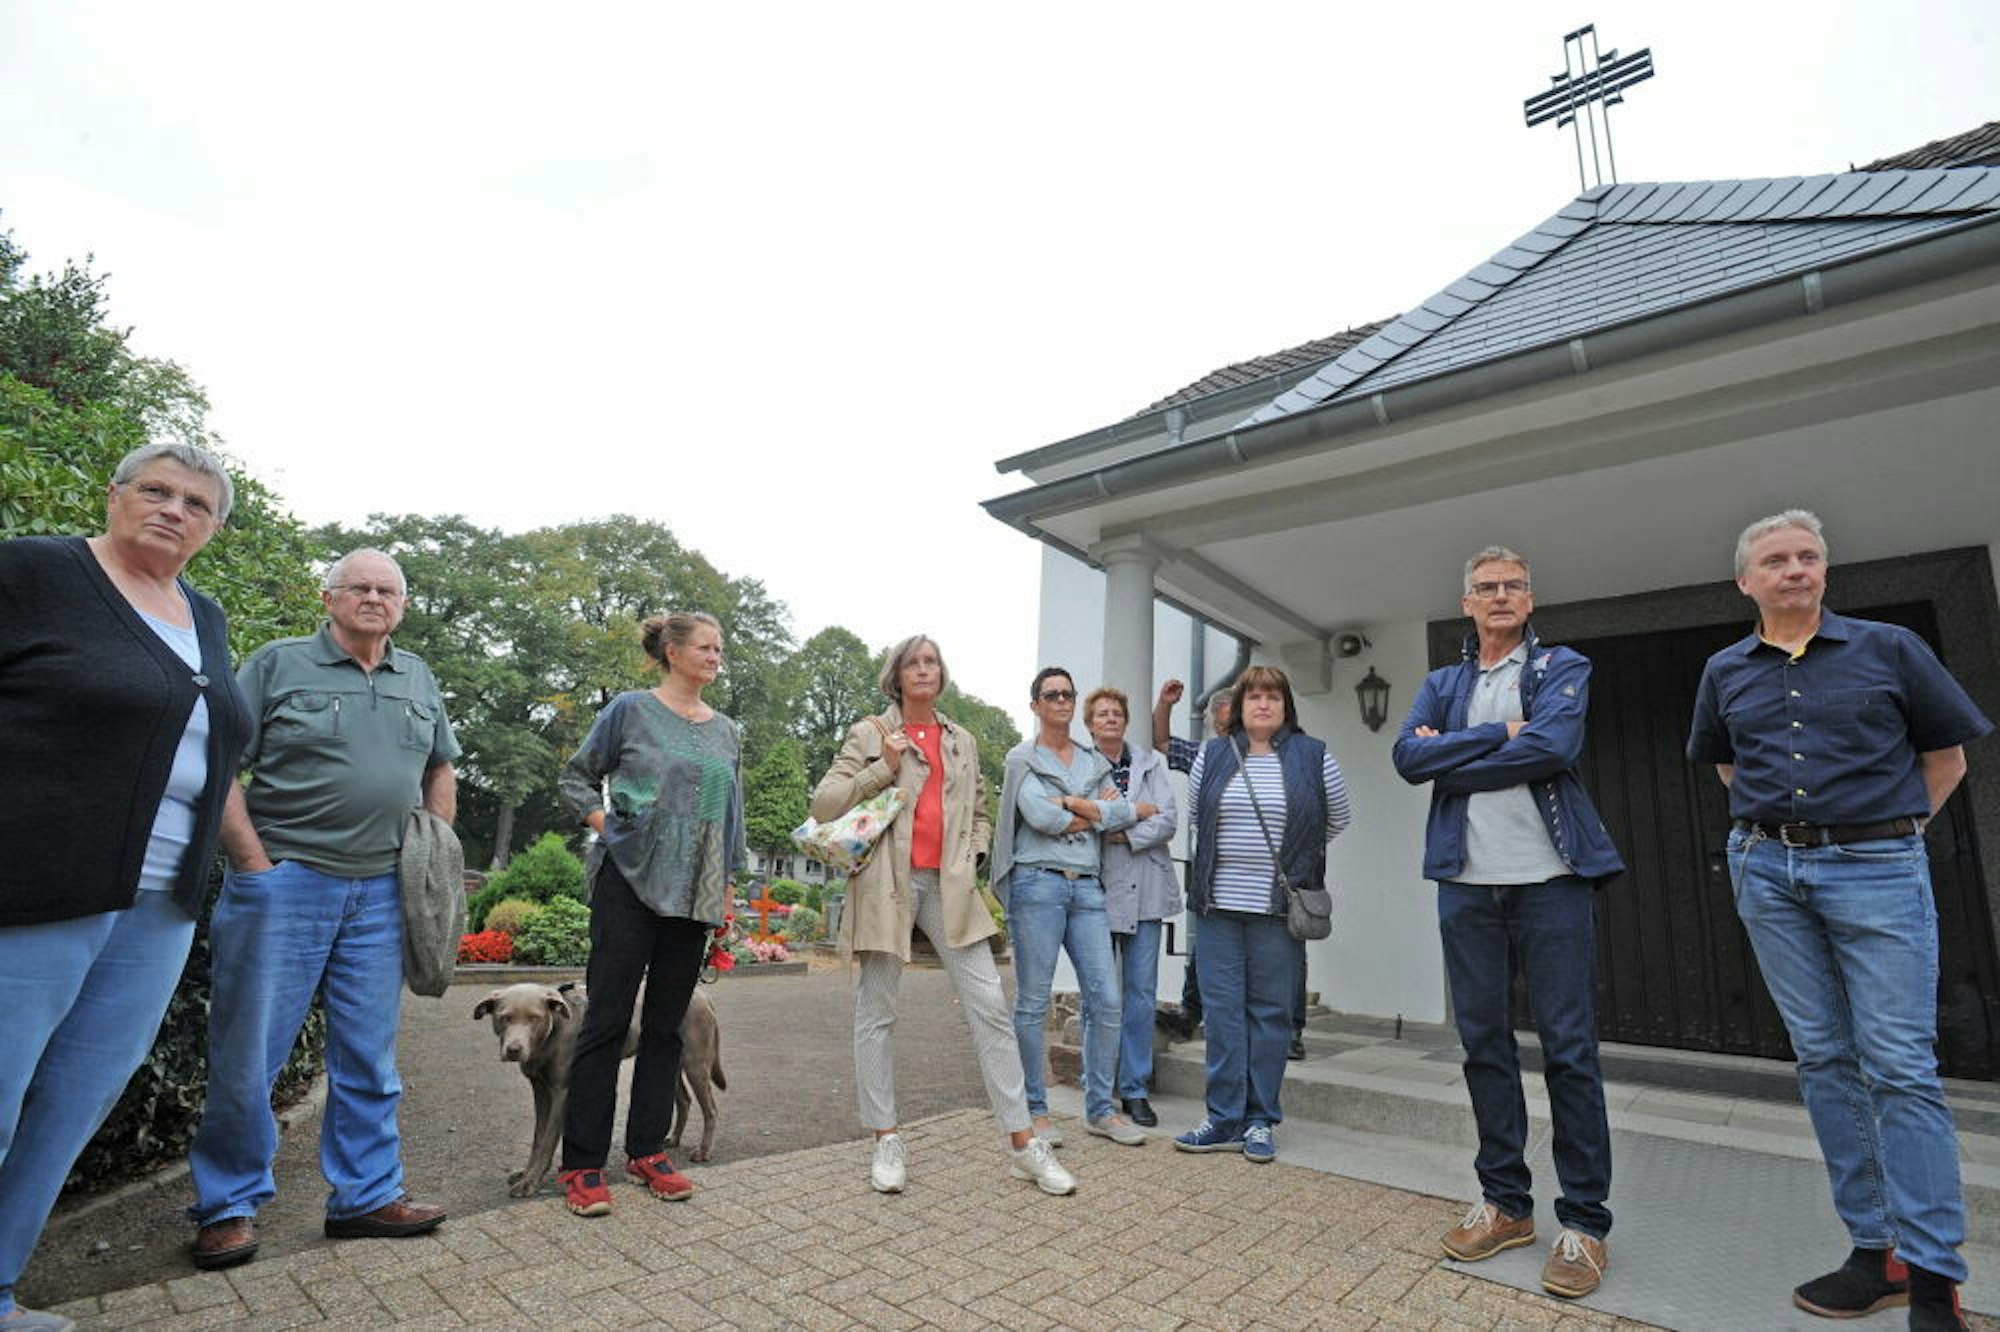 Für die Trauerhalle des Kommunalfriedhofs in Witzhelden will die SPD eine neue Lautsprecheranlage, die auch Übertragungen nach draußen ermöglicht.